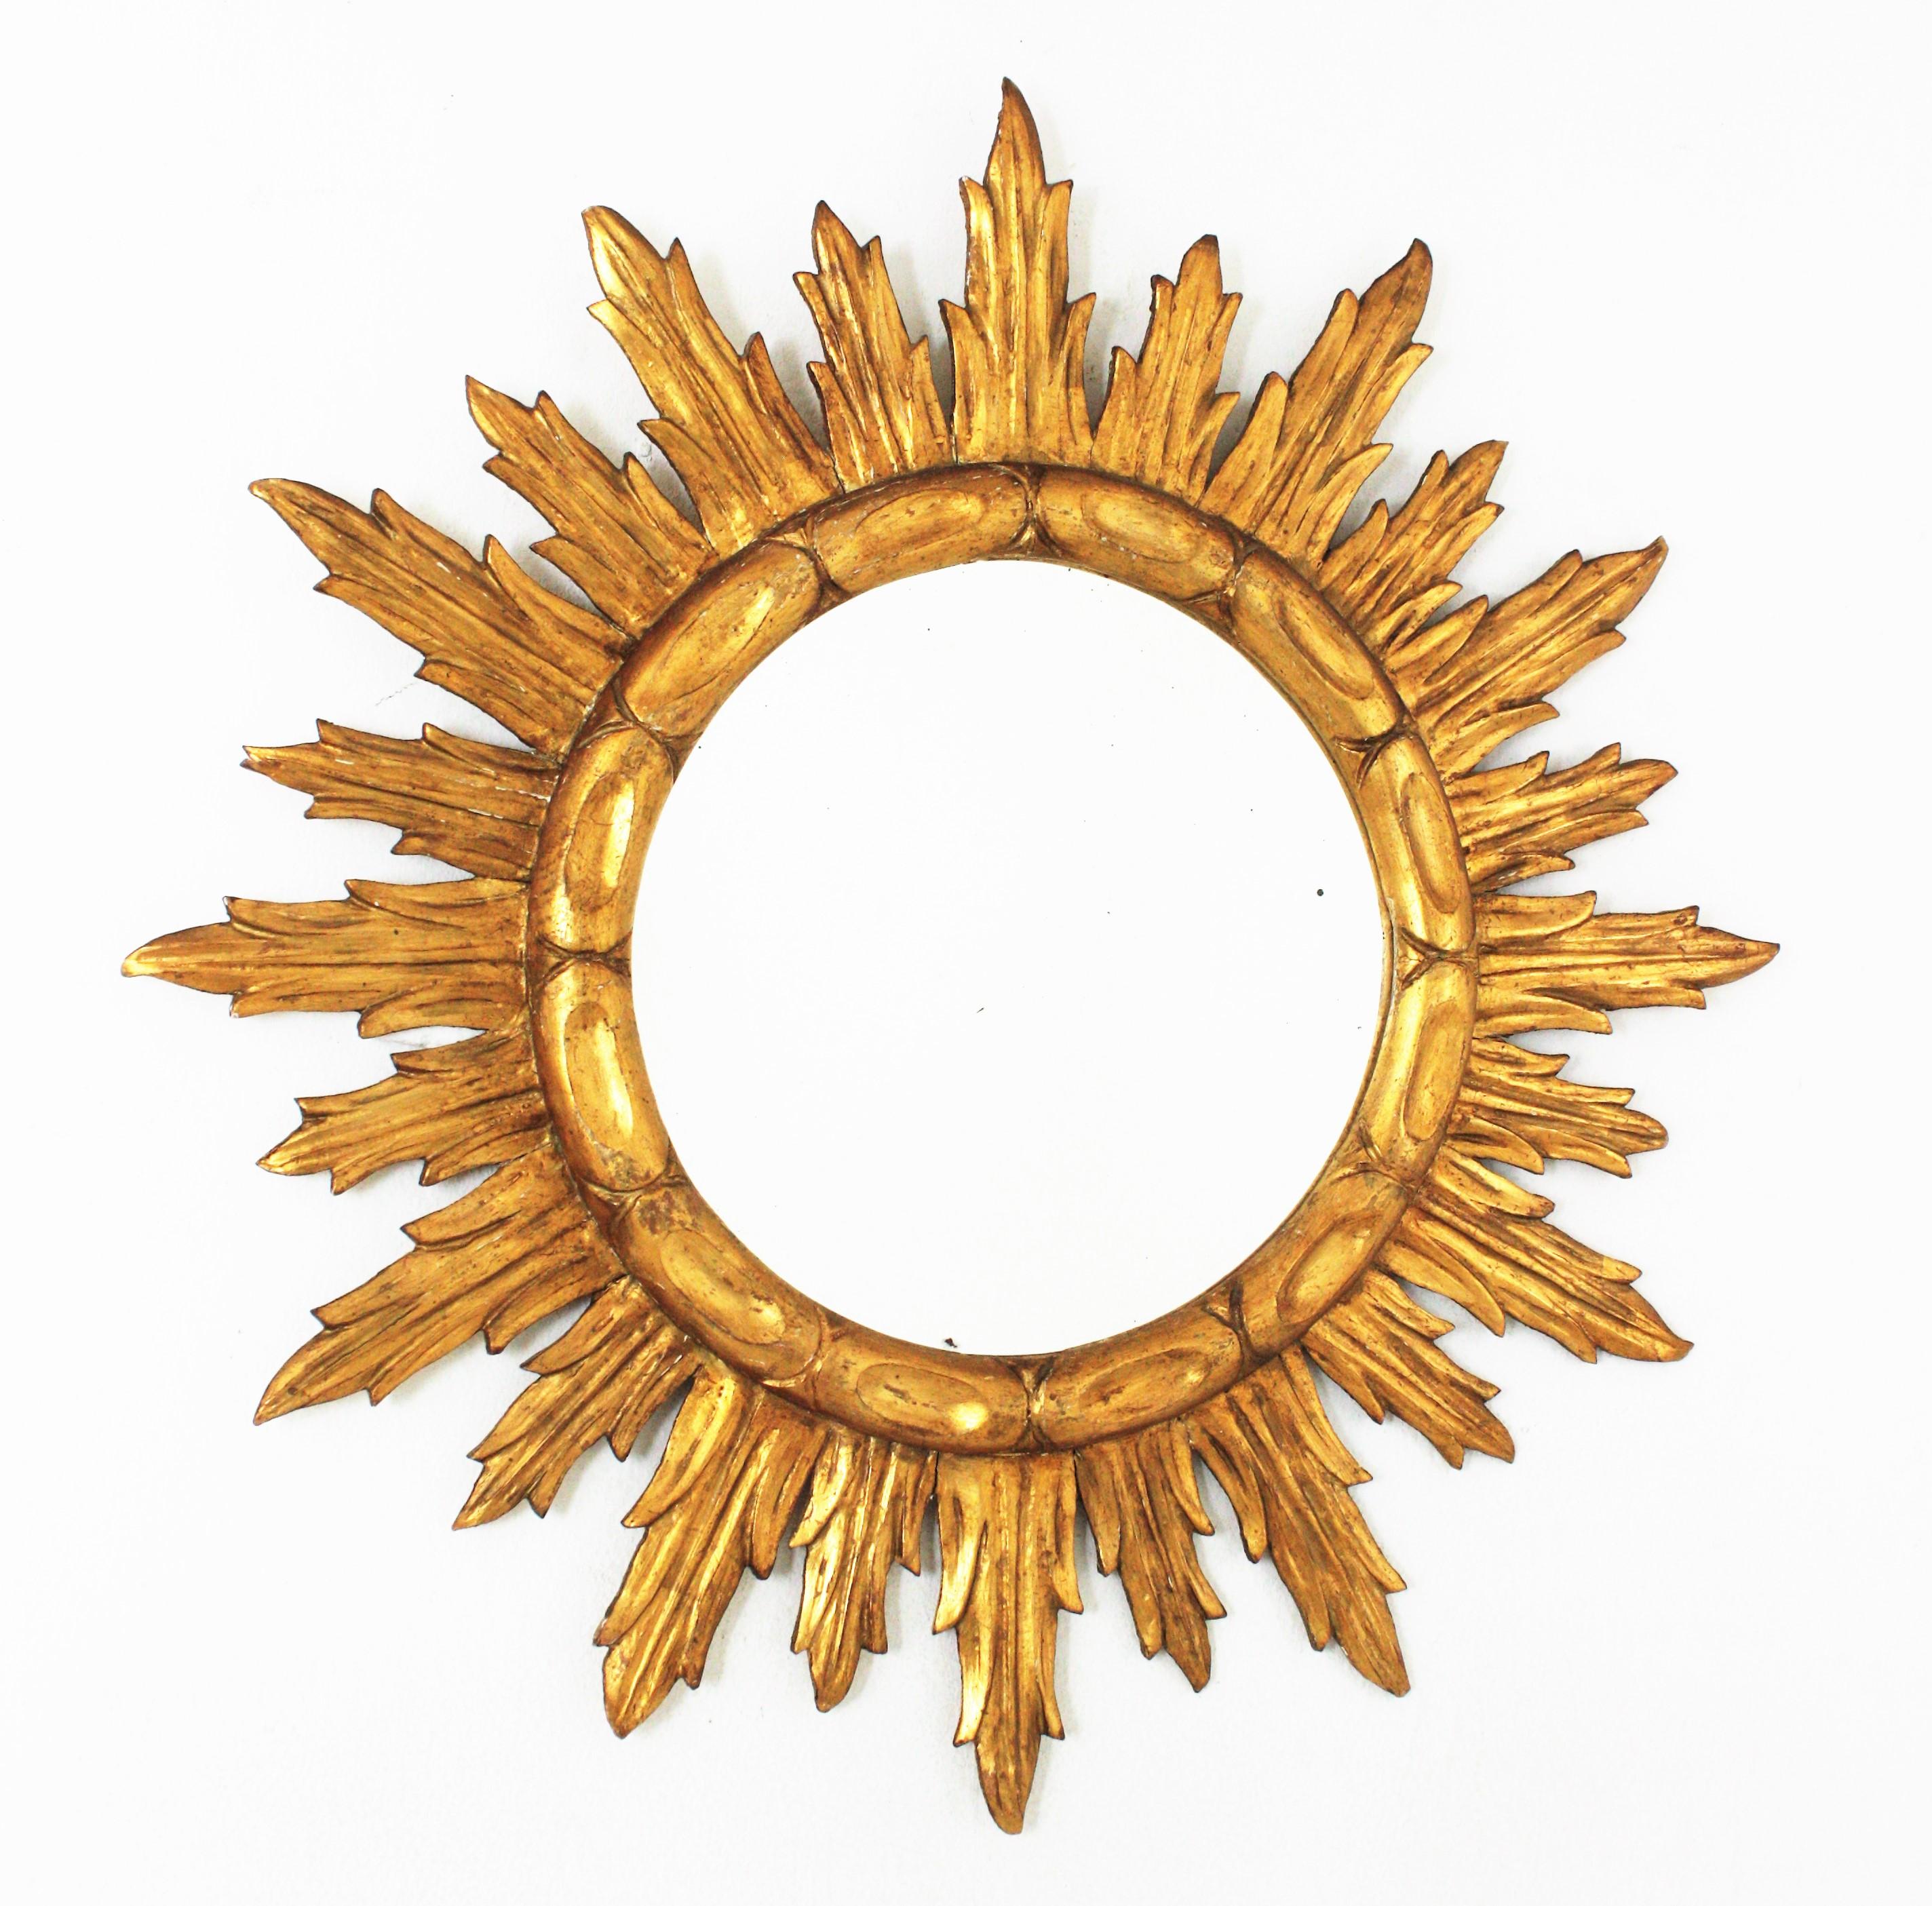 Hervorragender Spiegel aus fein geschnitztem und vergoldetem Holz mit Sonnenschliff. Spanien, 1940er-1950er Jahre
Geschnitztes Holz und Blattvergoldung. Der Rahmen hat fein geschnitzte Strahlen in zwei Größen und einen gemusterten runden Ring, der